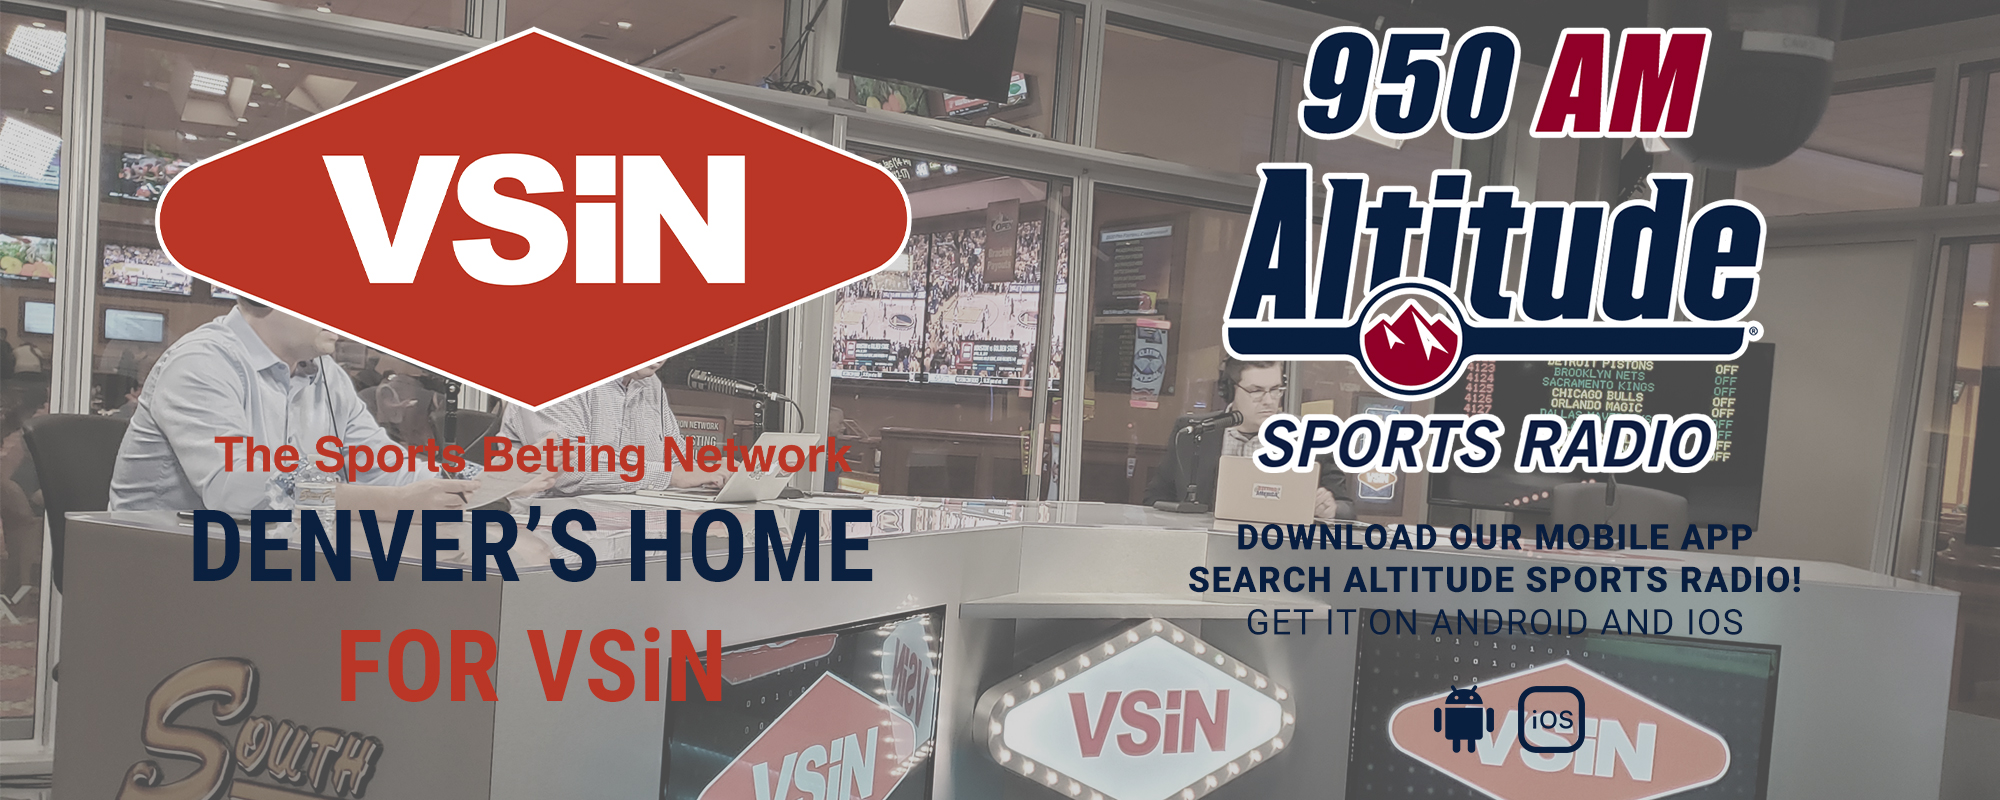 Denver's Home for VSiN - Altitude Sports Radio